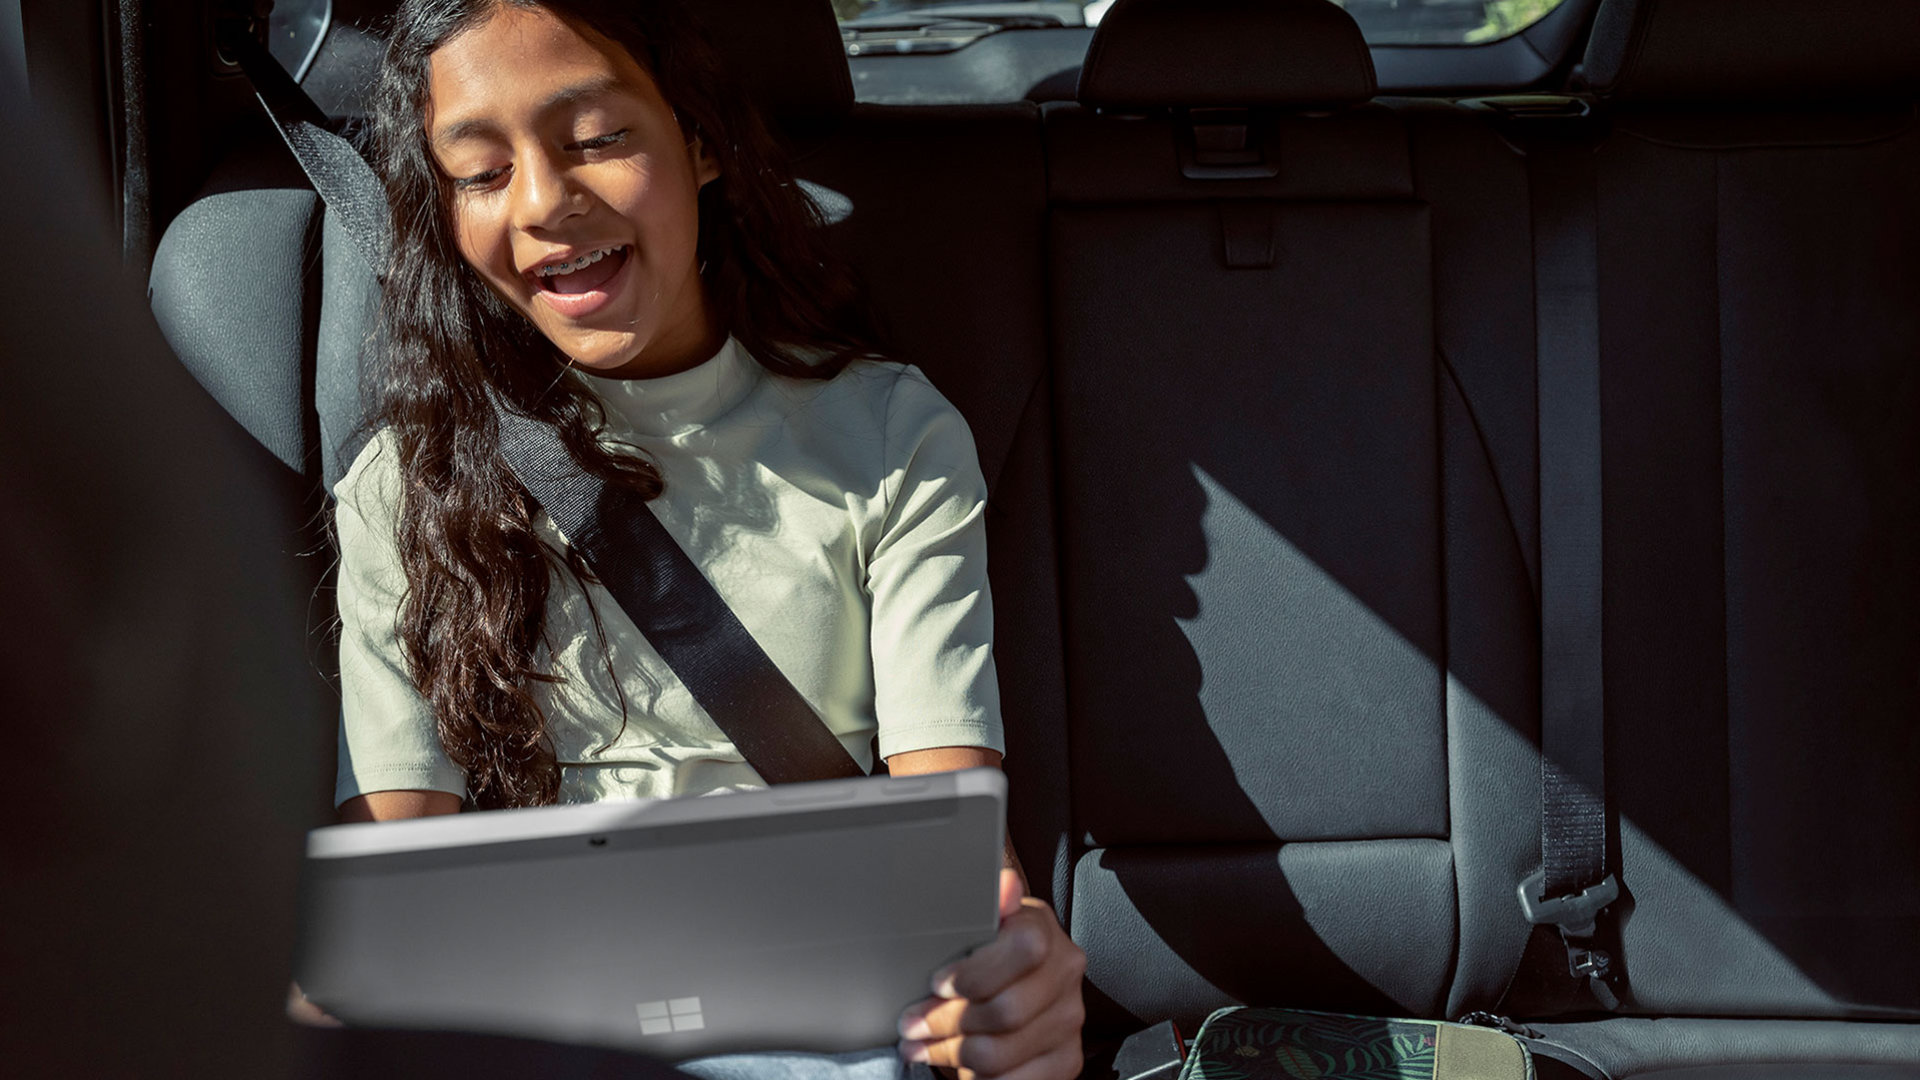 Kind verwendet Surface Go 3 im Auto.